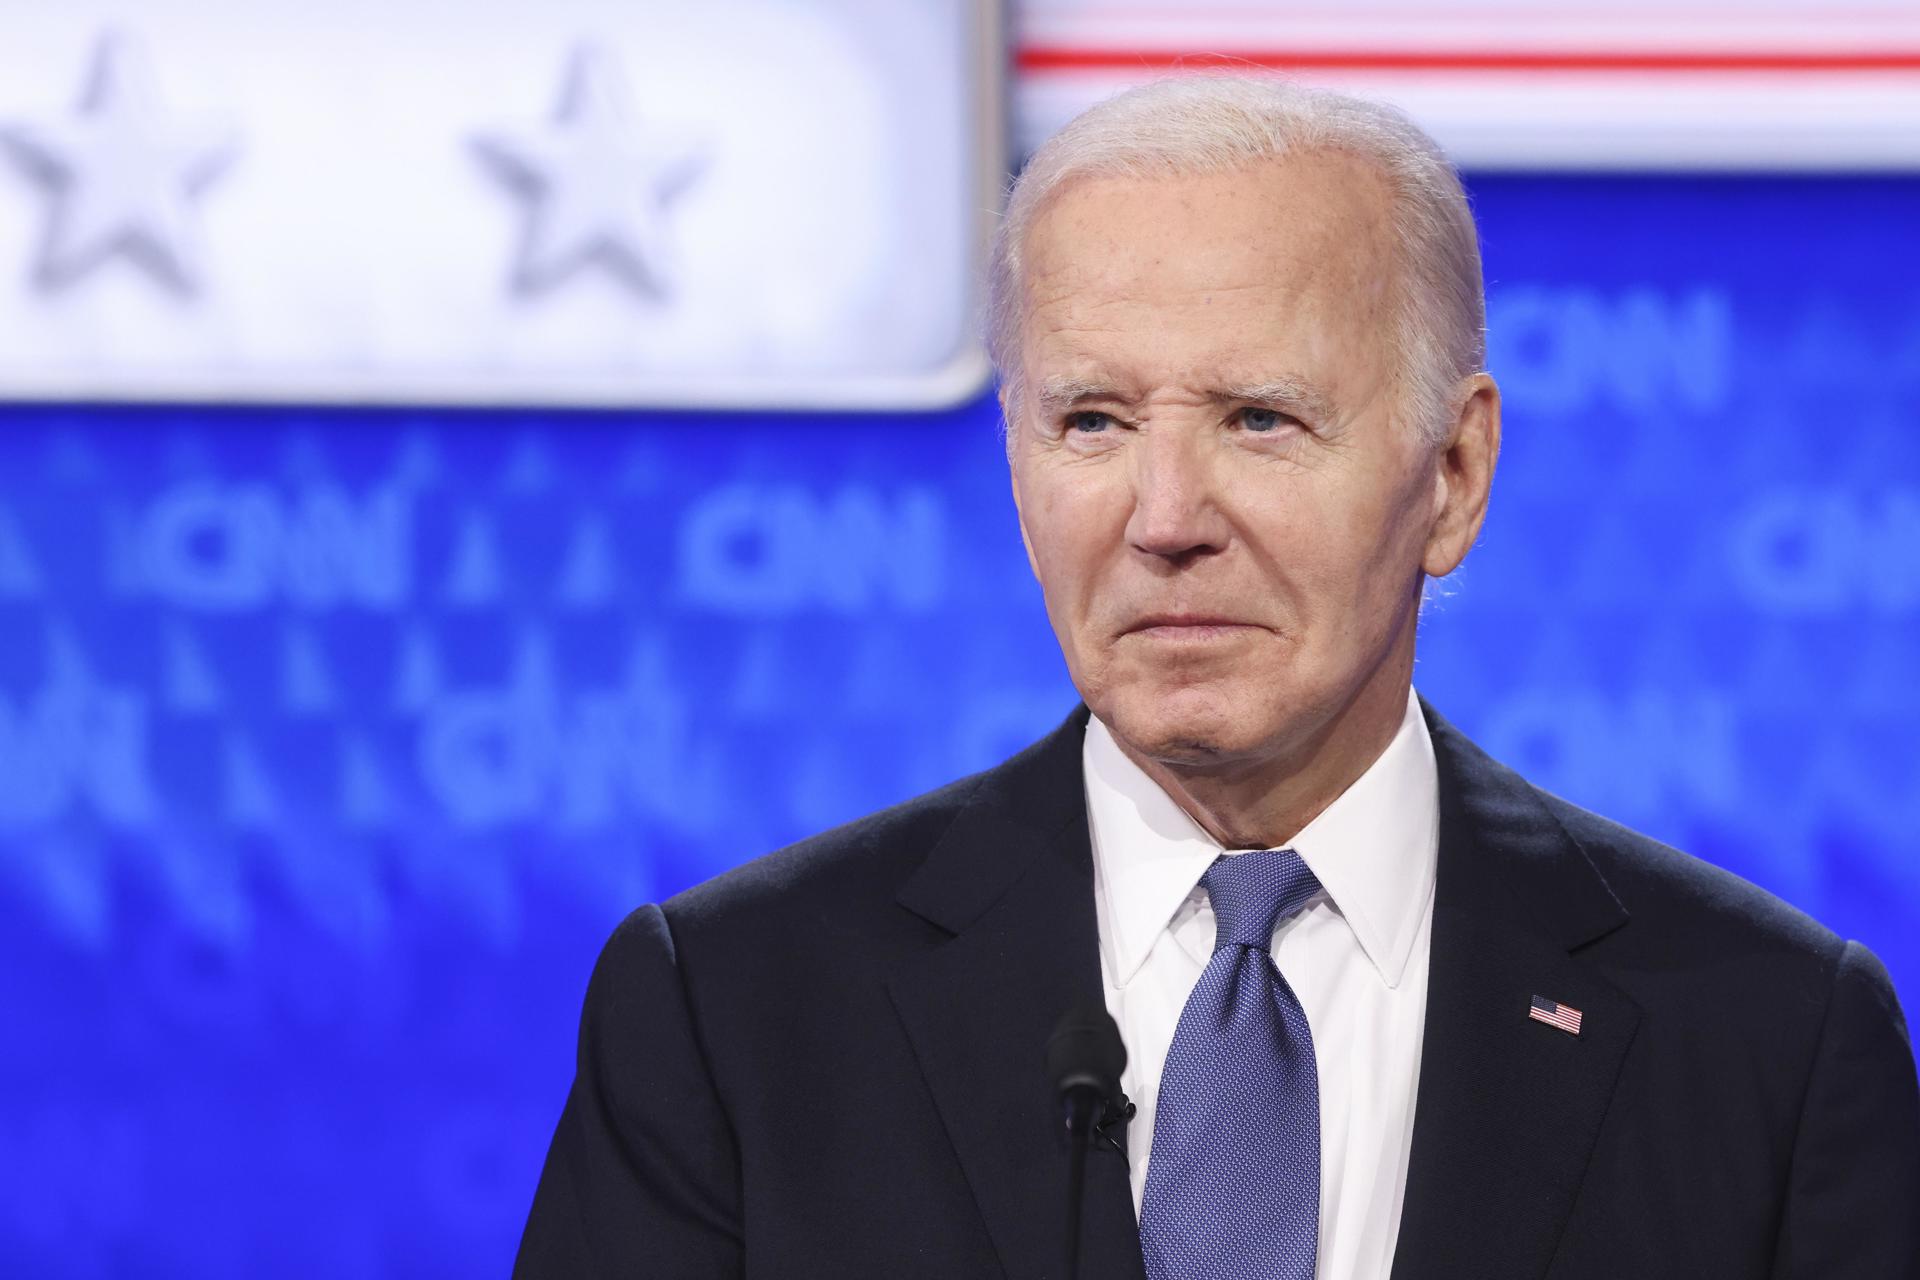 La campaña de Biden recaudó más de 30 millones de dólares tras el debate contra Trump